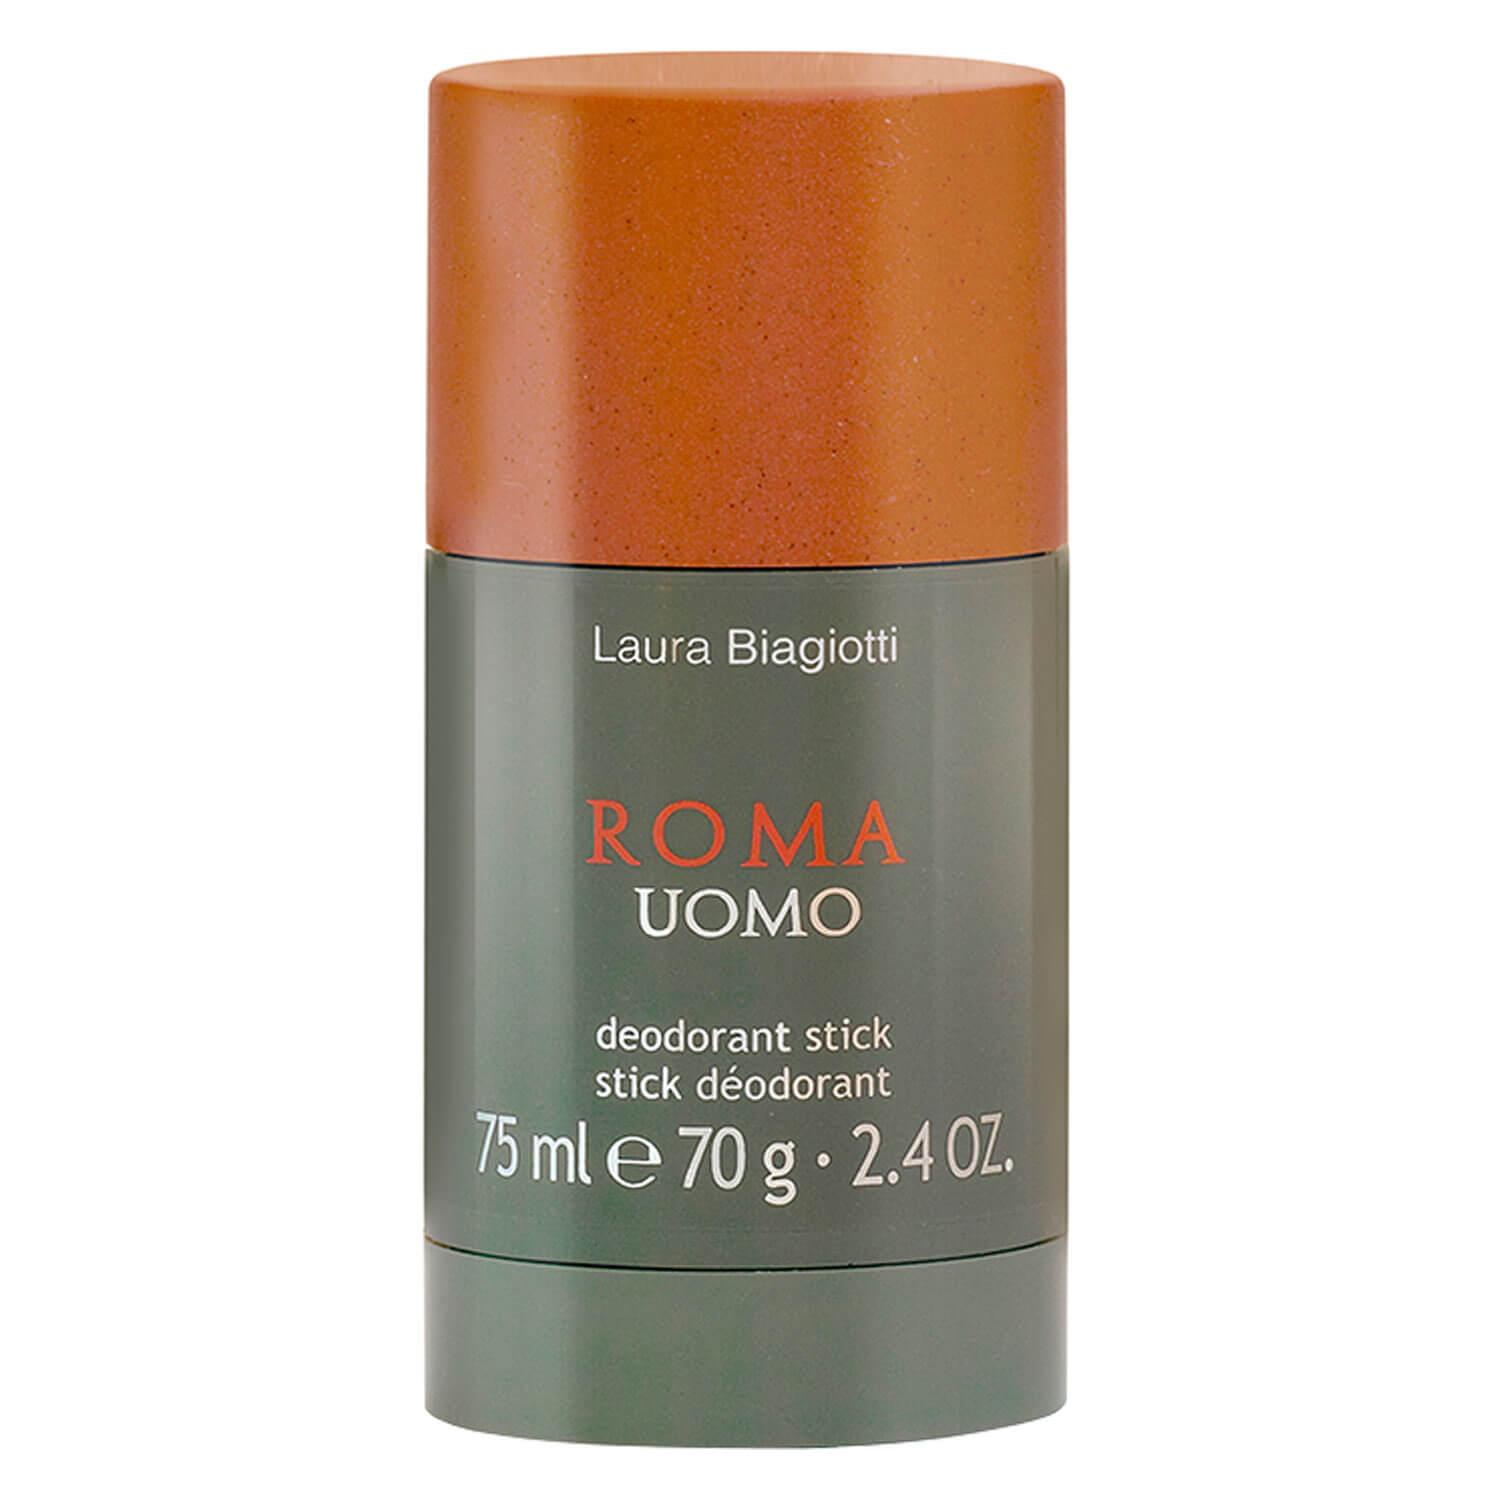 Roma - Uomo Deodorant Stick